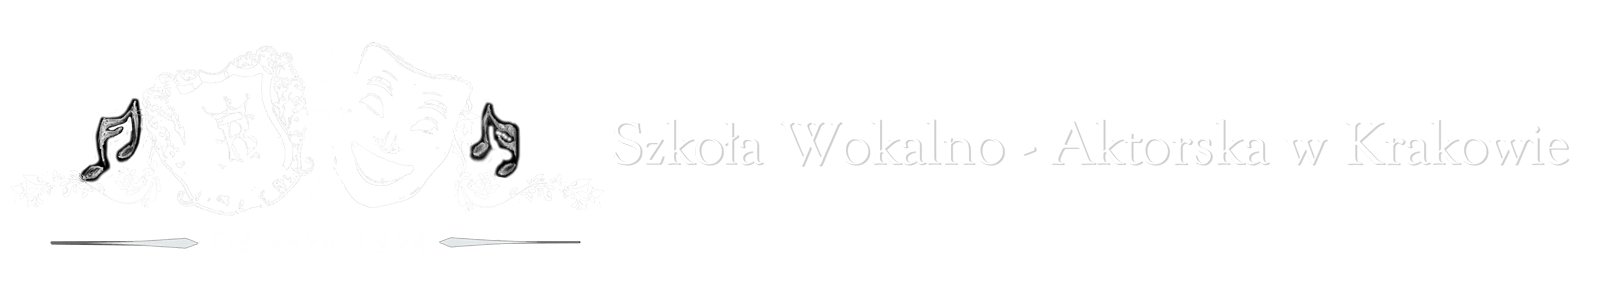 Szkoła Wokalno-Aktorska w Krakowie